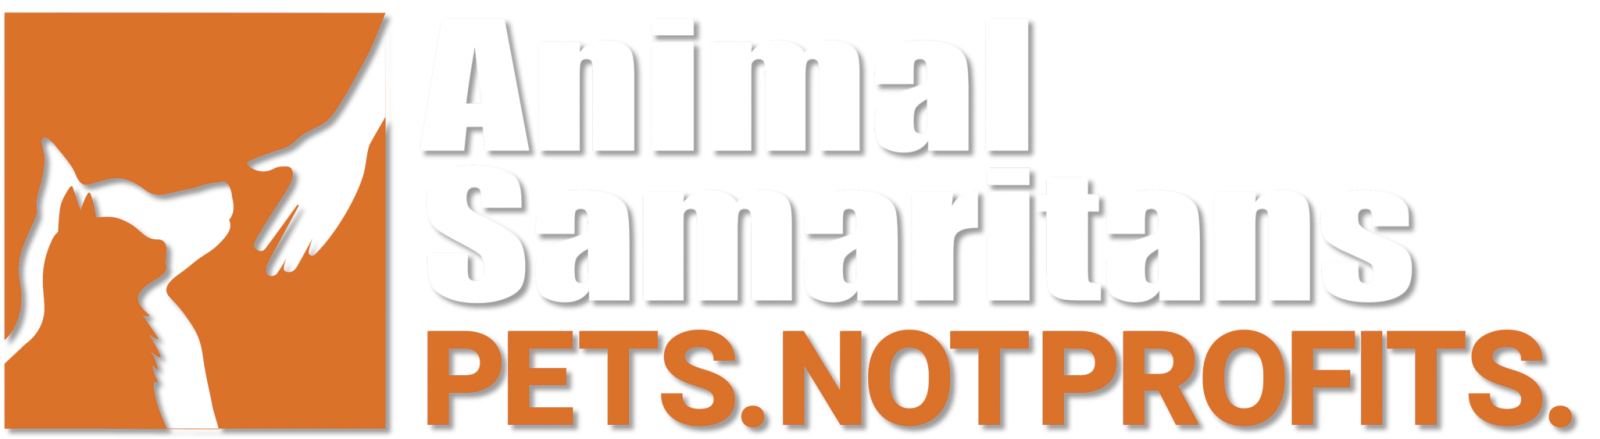 Animal Samaritans Logo